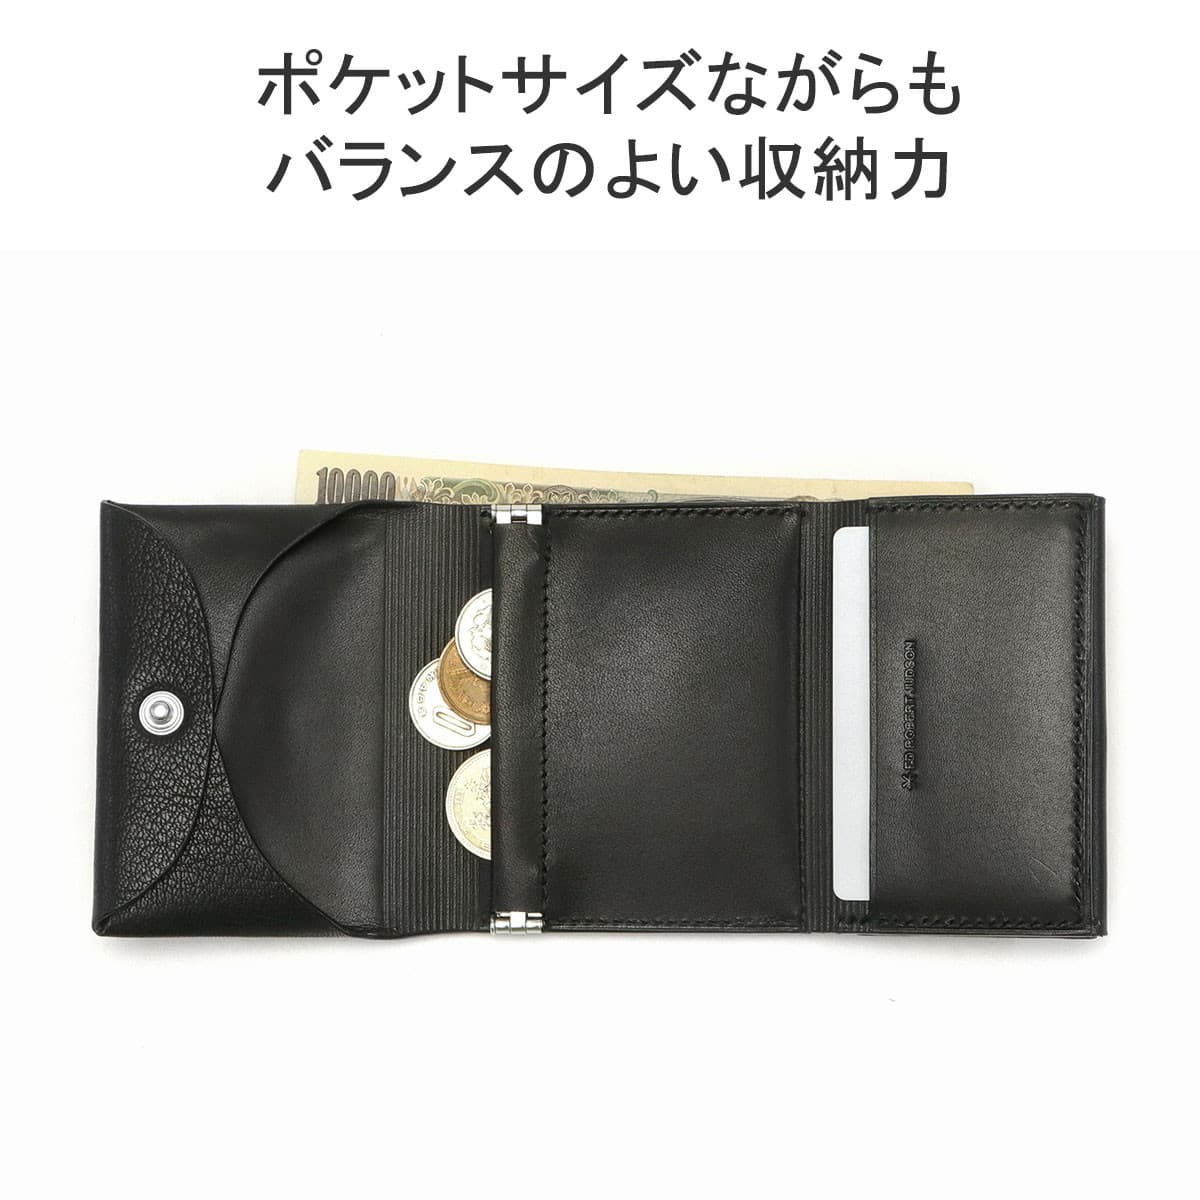 エドロバートジャドソンTHIN FLAP TRIFOLD WALLET三つ折財布-カードポケットx1